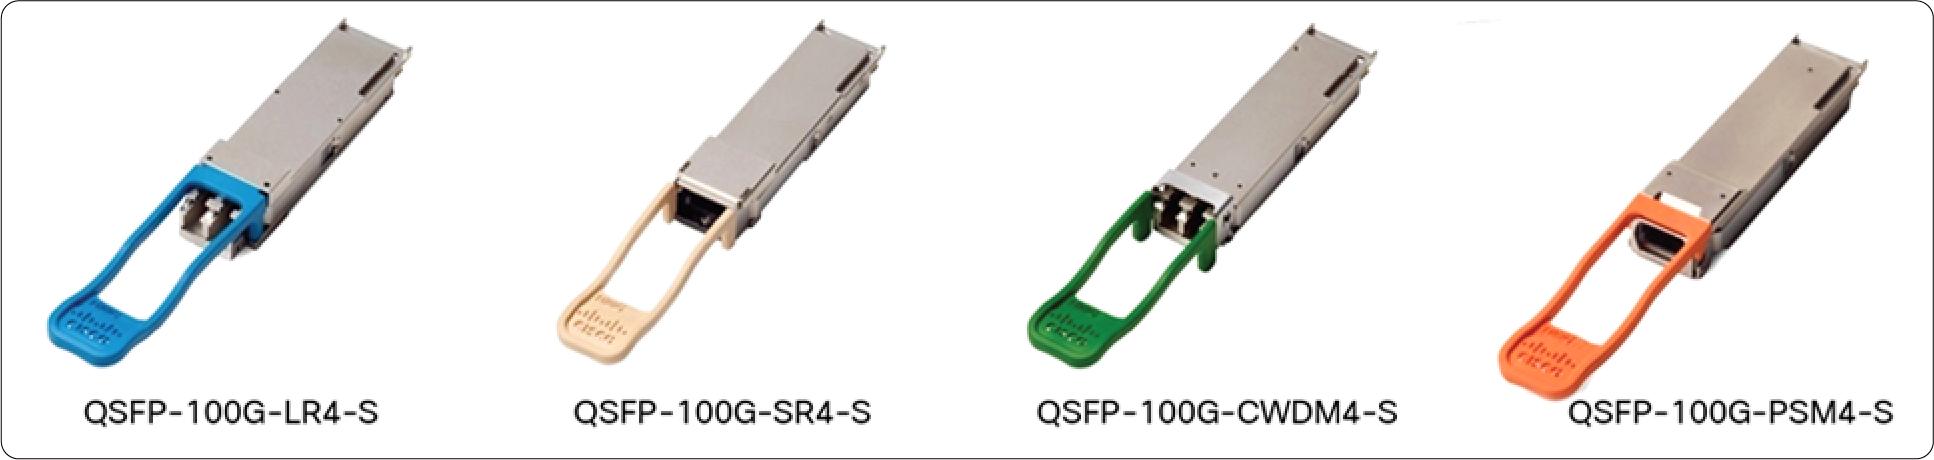 QSFP-100G-AOC5M Cisco 100 Gigabit Modules - Cisco 100GBASE QSFP Modules - 2